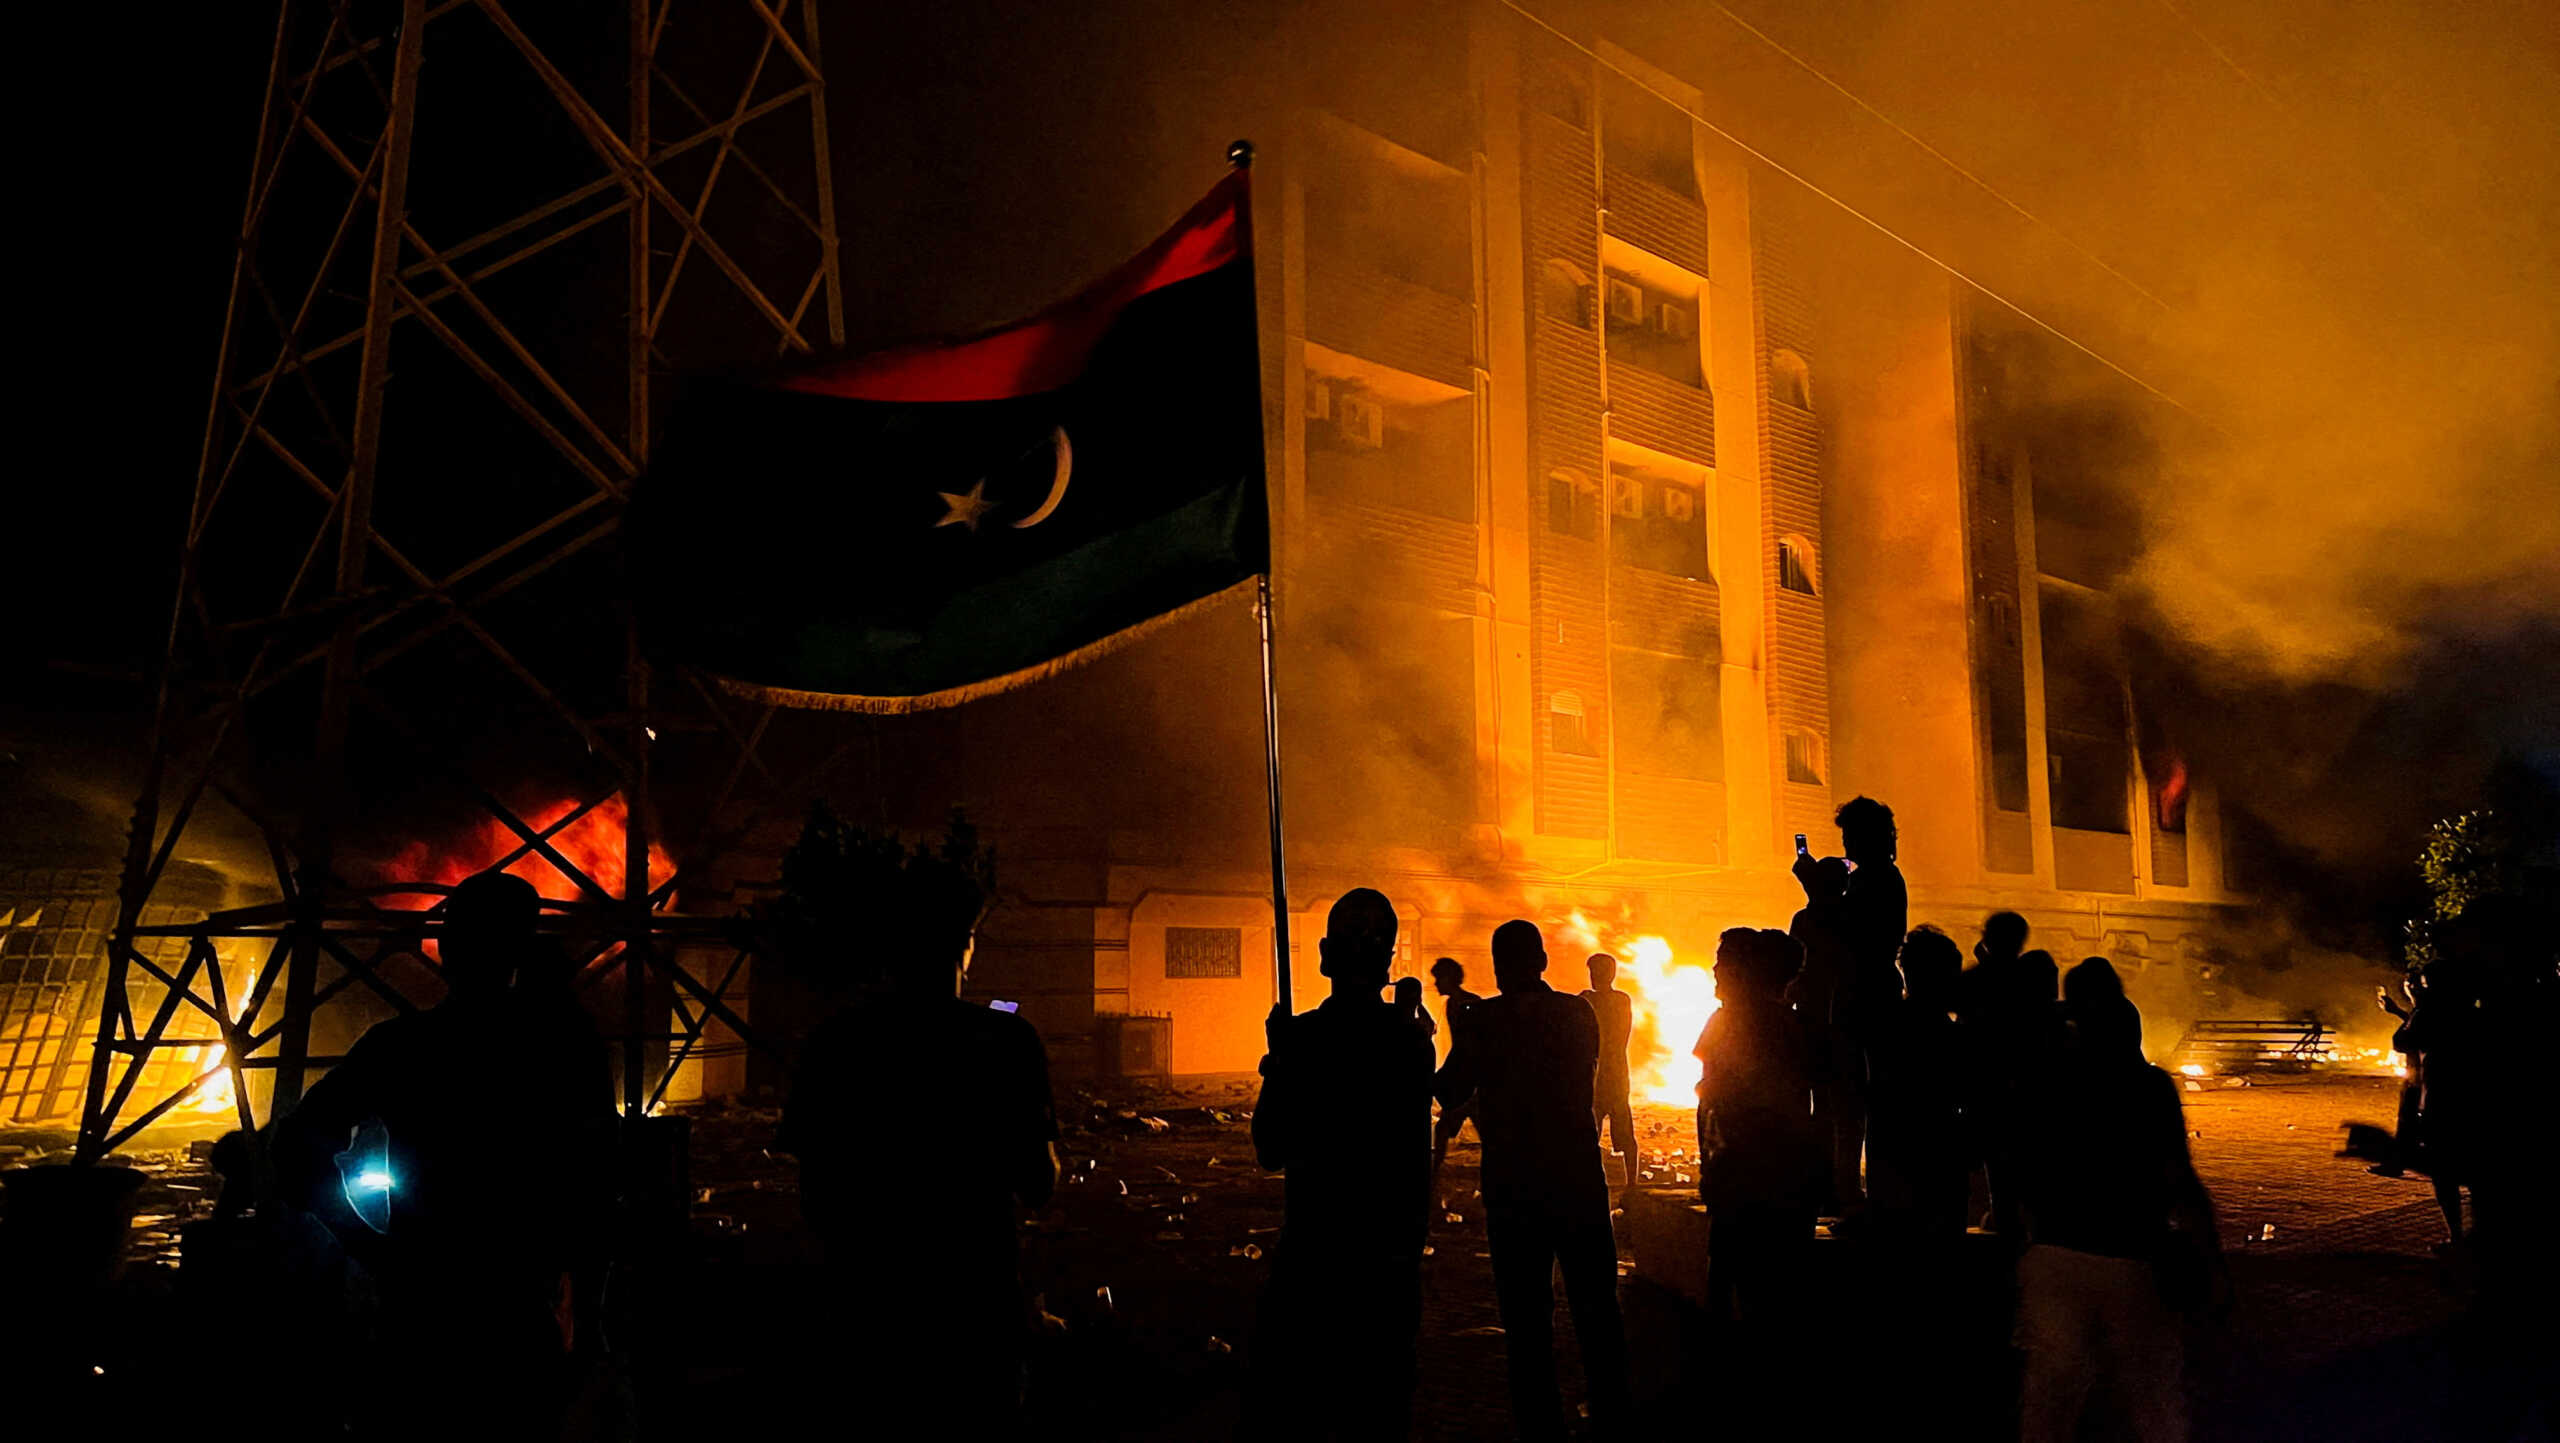 Λιβύη: Νέες μαζικές διαδηλώσεις στην Τρίπολη και σε άλλες πόλεις – Φωτιές και φόβοι για ακόμα μεγαλύτερες ταραχές